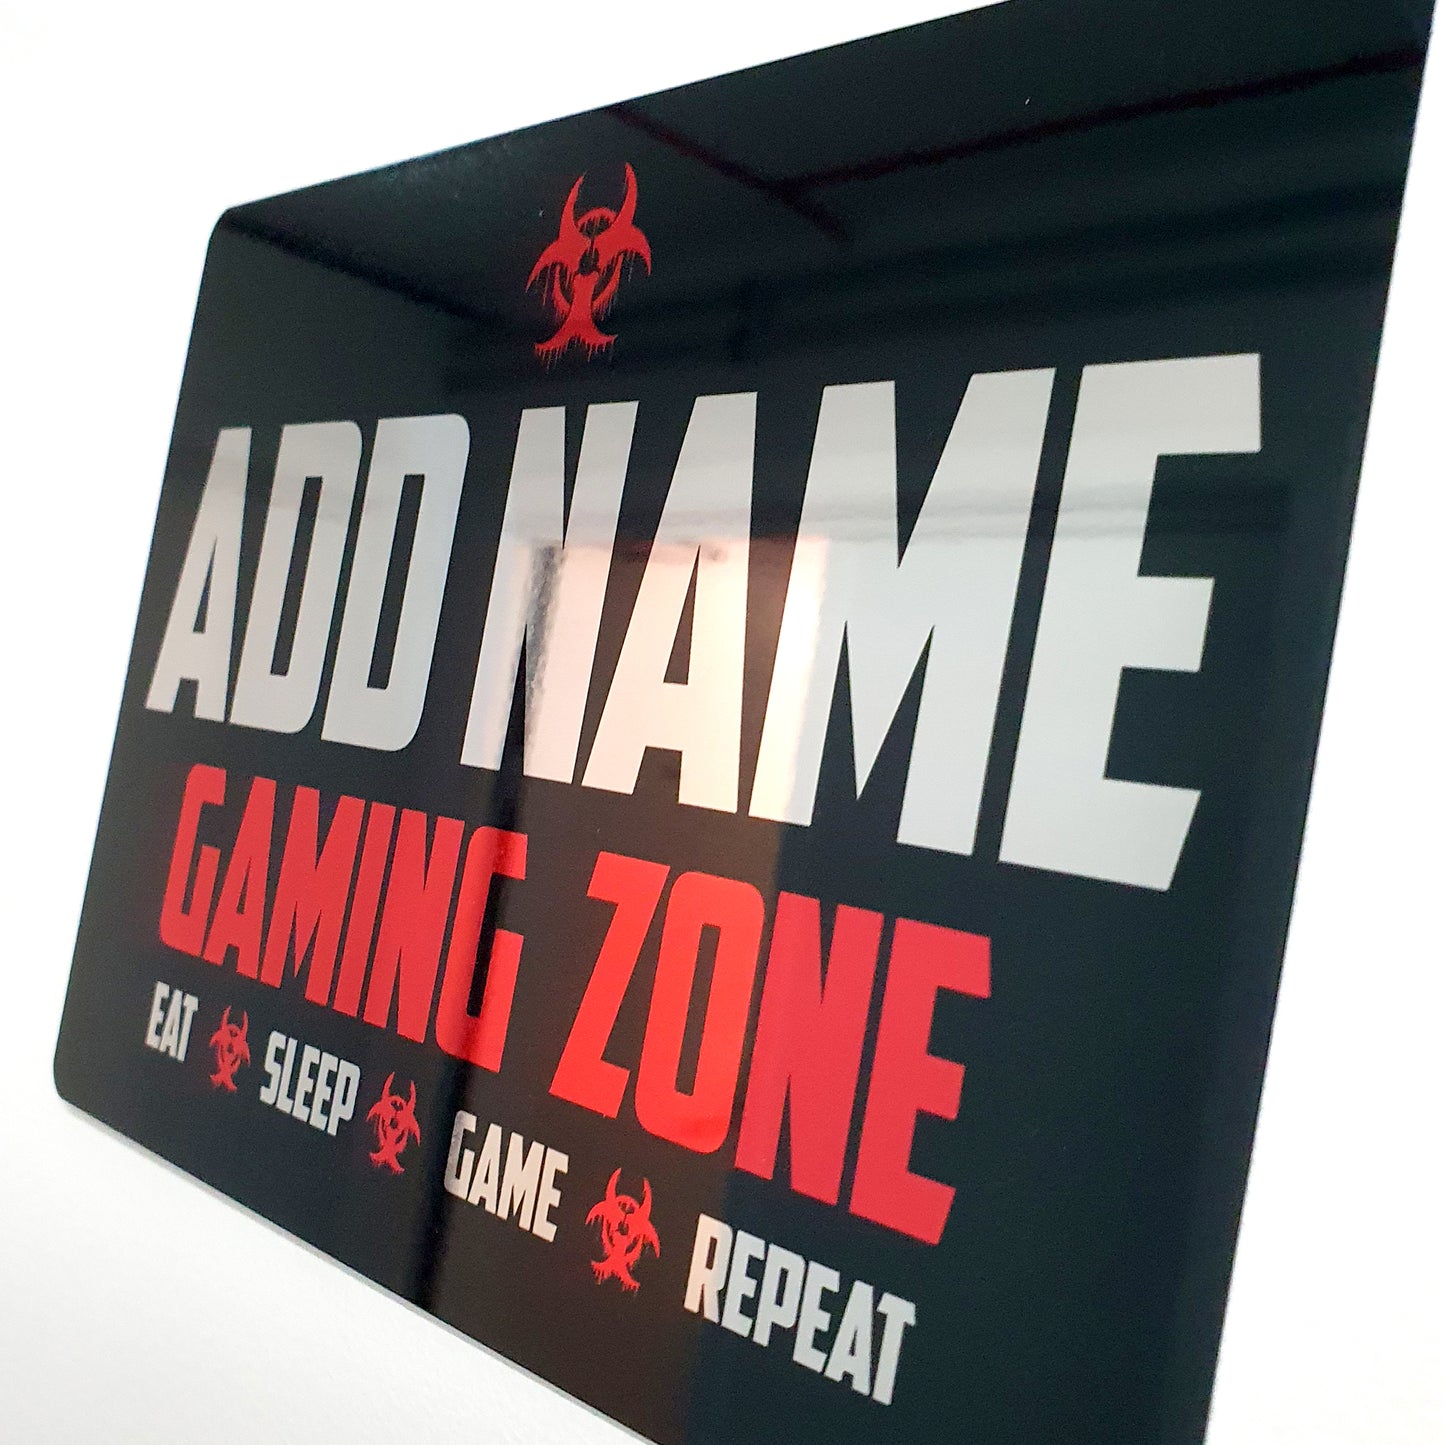 Personalisiertes rotes Gamer-Schild aus Metallspiegel – Gaming Zone Caution